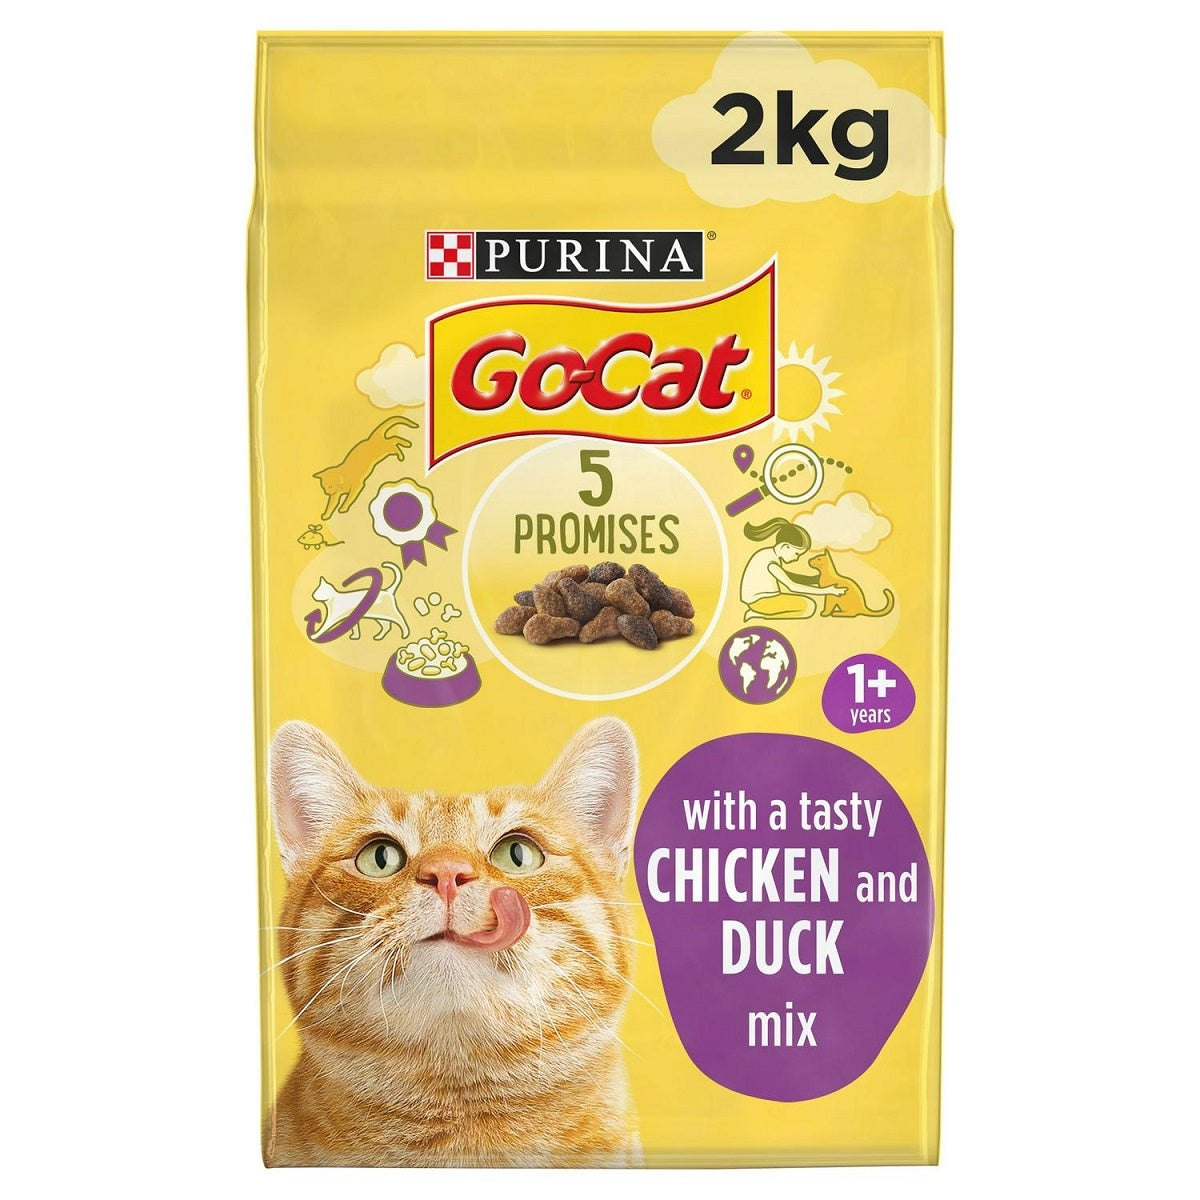 Go-Cat - Chicken & Duck Complete